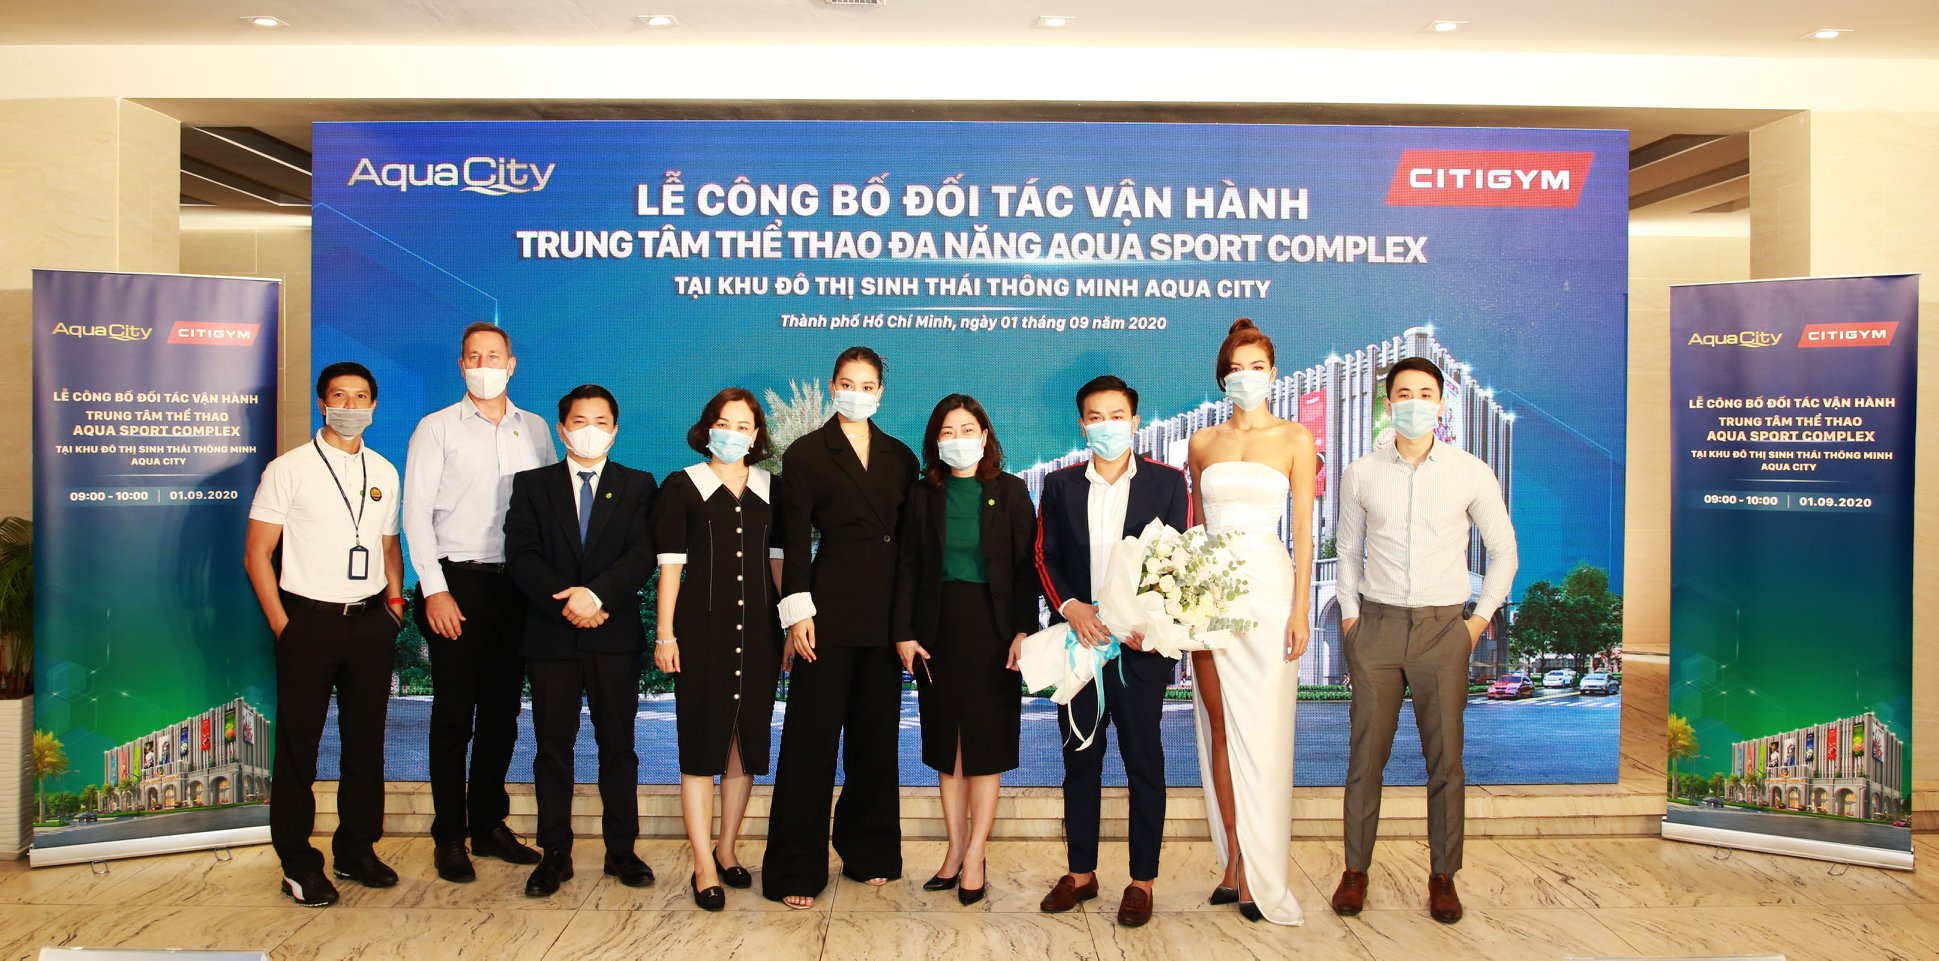 Sự kiện có sự hiện diện của Hoa hậu Việt Nam Trần Tiểu Vy (thứ năm từ trái sang) và siêu mẫu Minh Tú (váy trắng) trong vai trò Đại sứ thương hiệu của Citigym